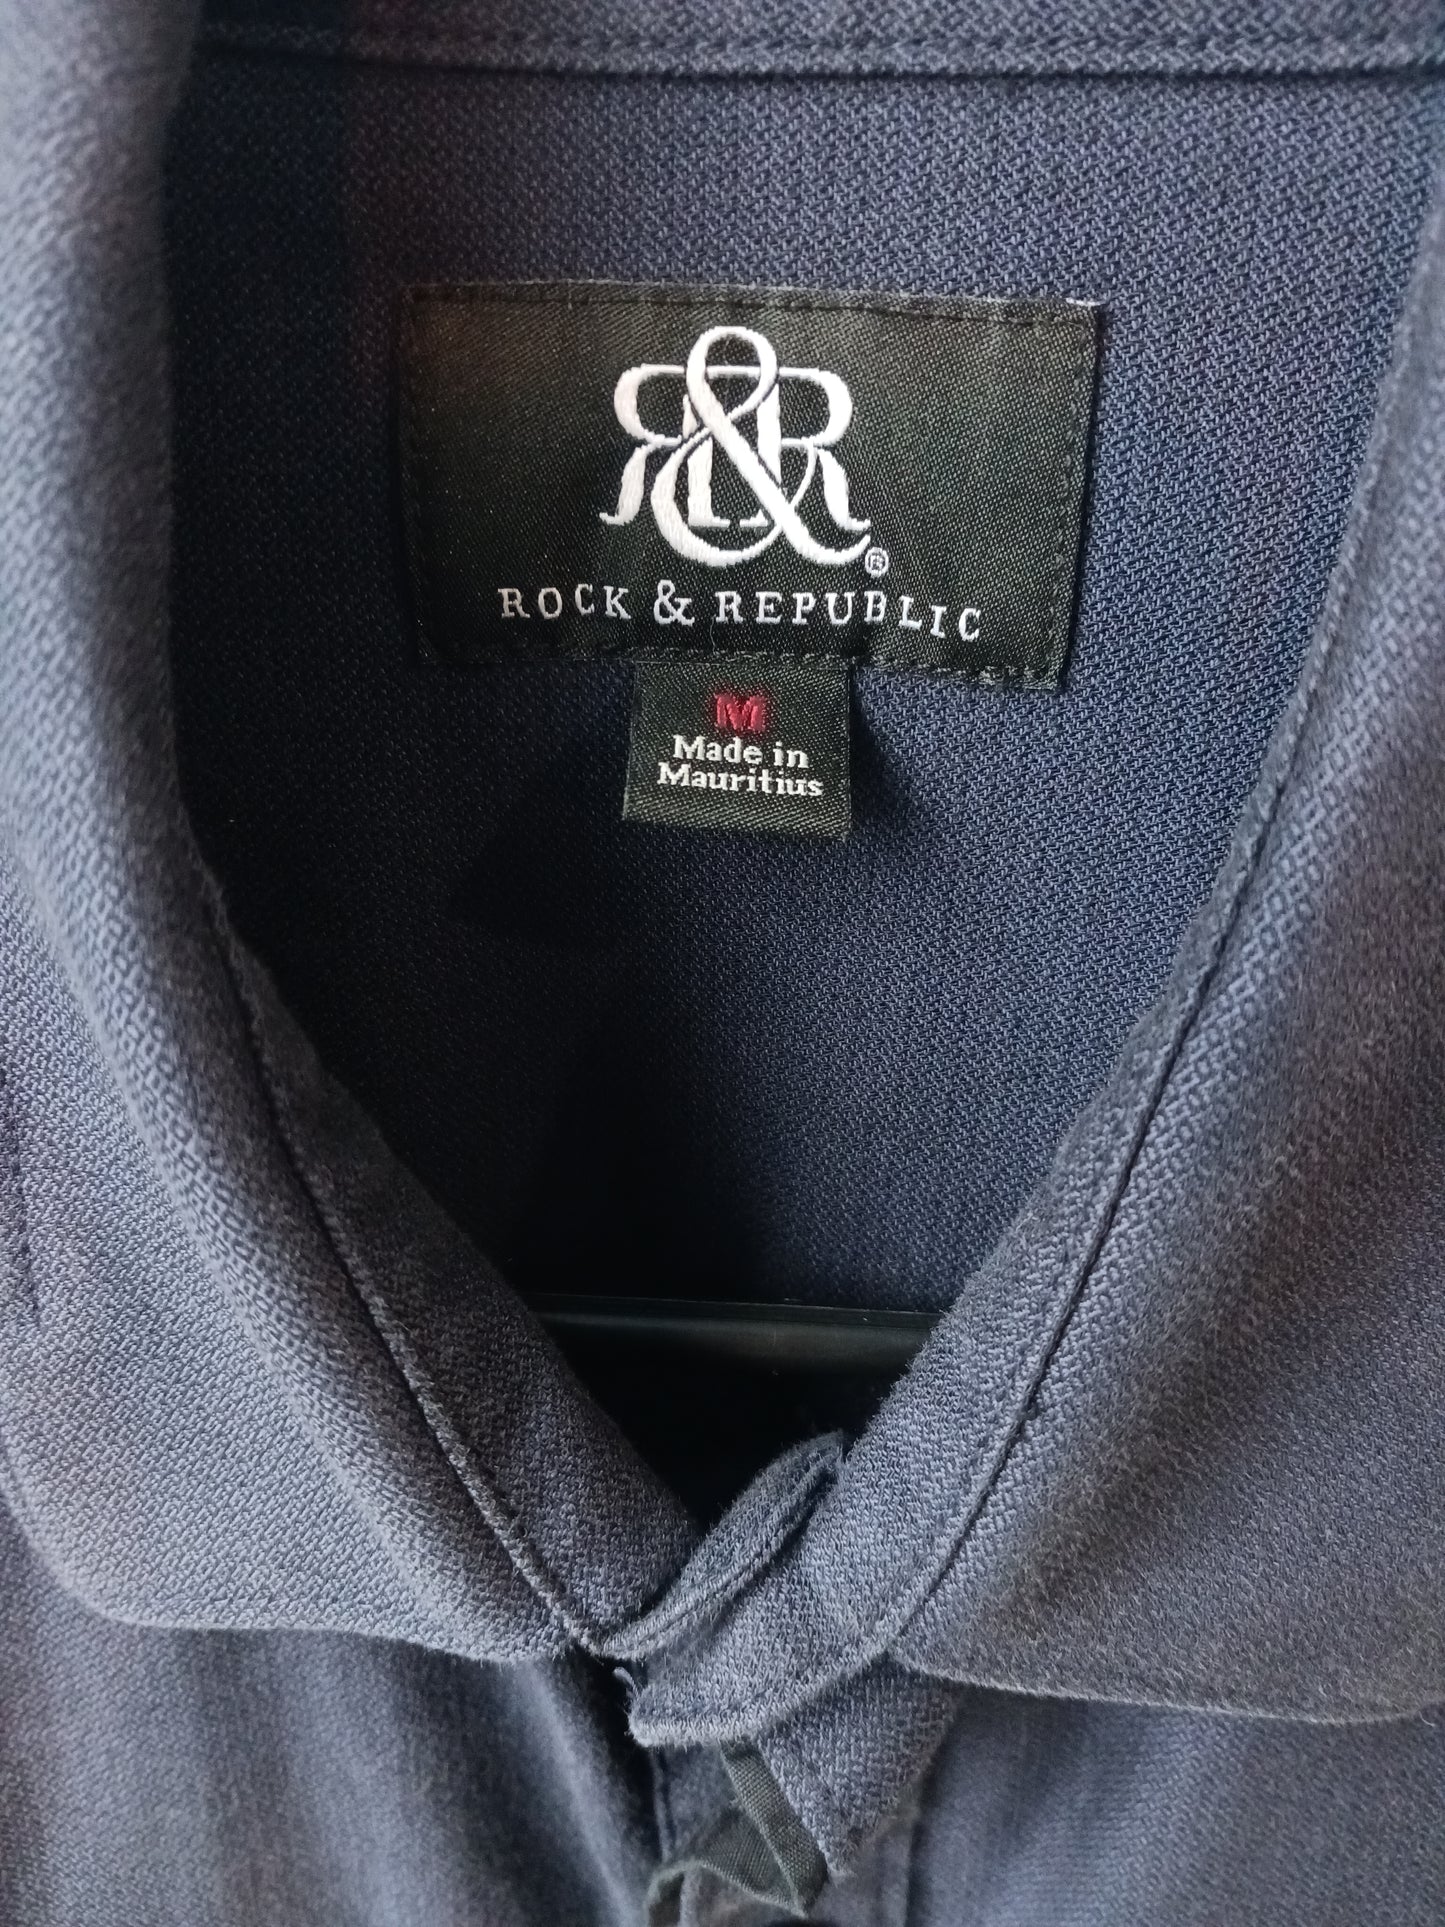 Rock & Republic Blue Button-up Mens Shirt, Size Medium